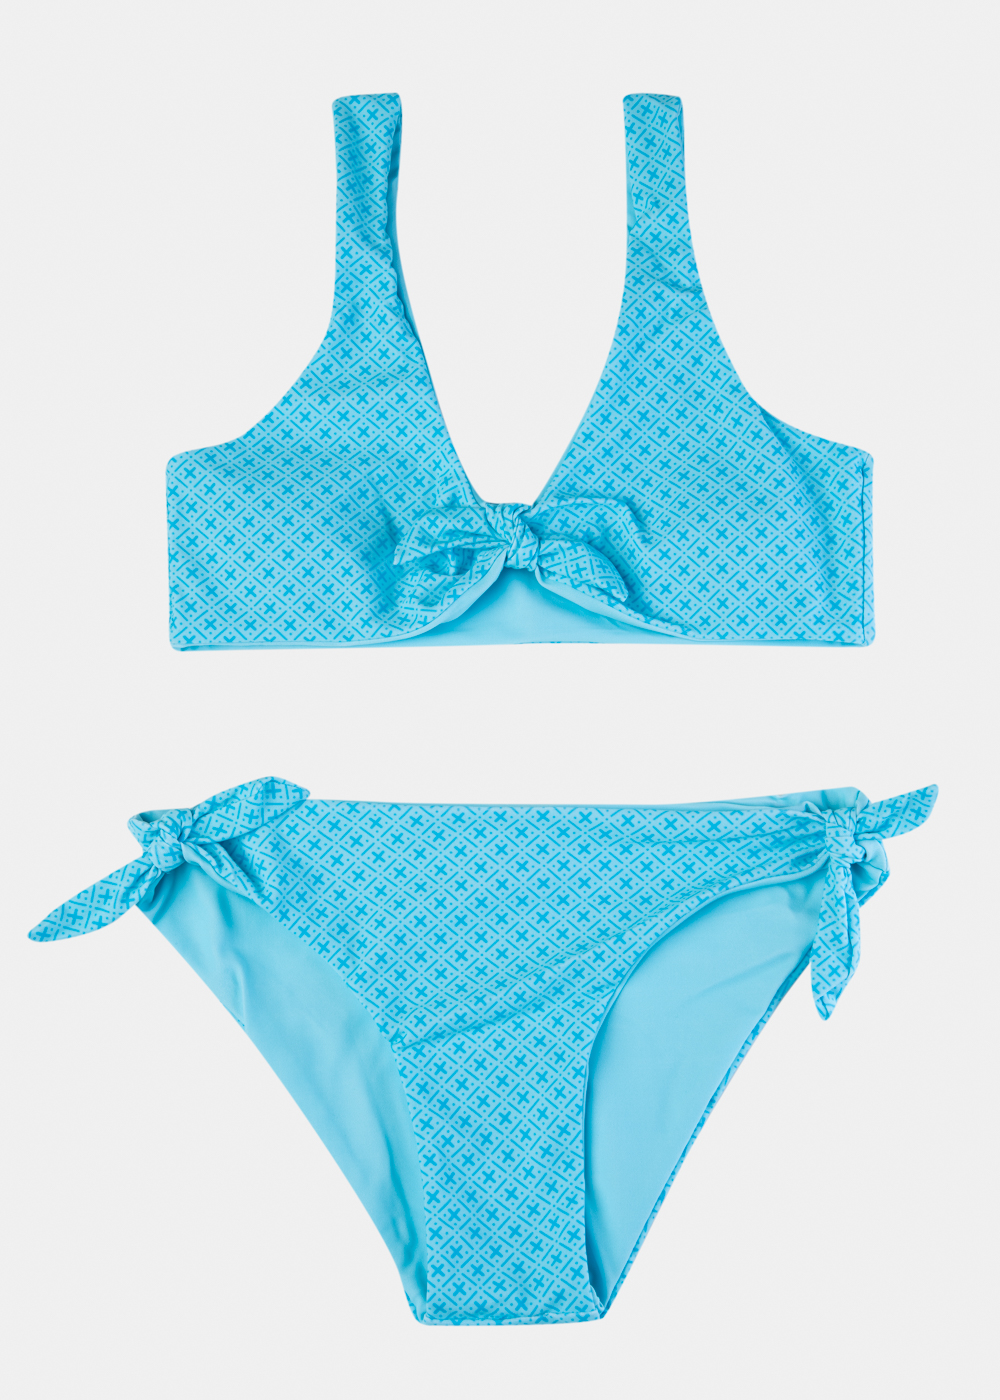 Girls Printed High Waisted Bikini Swimwear - Blue